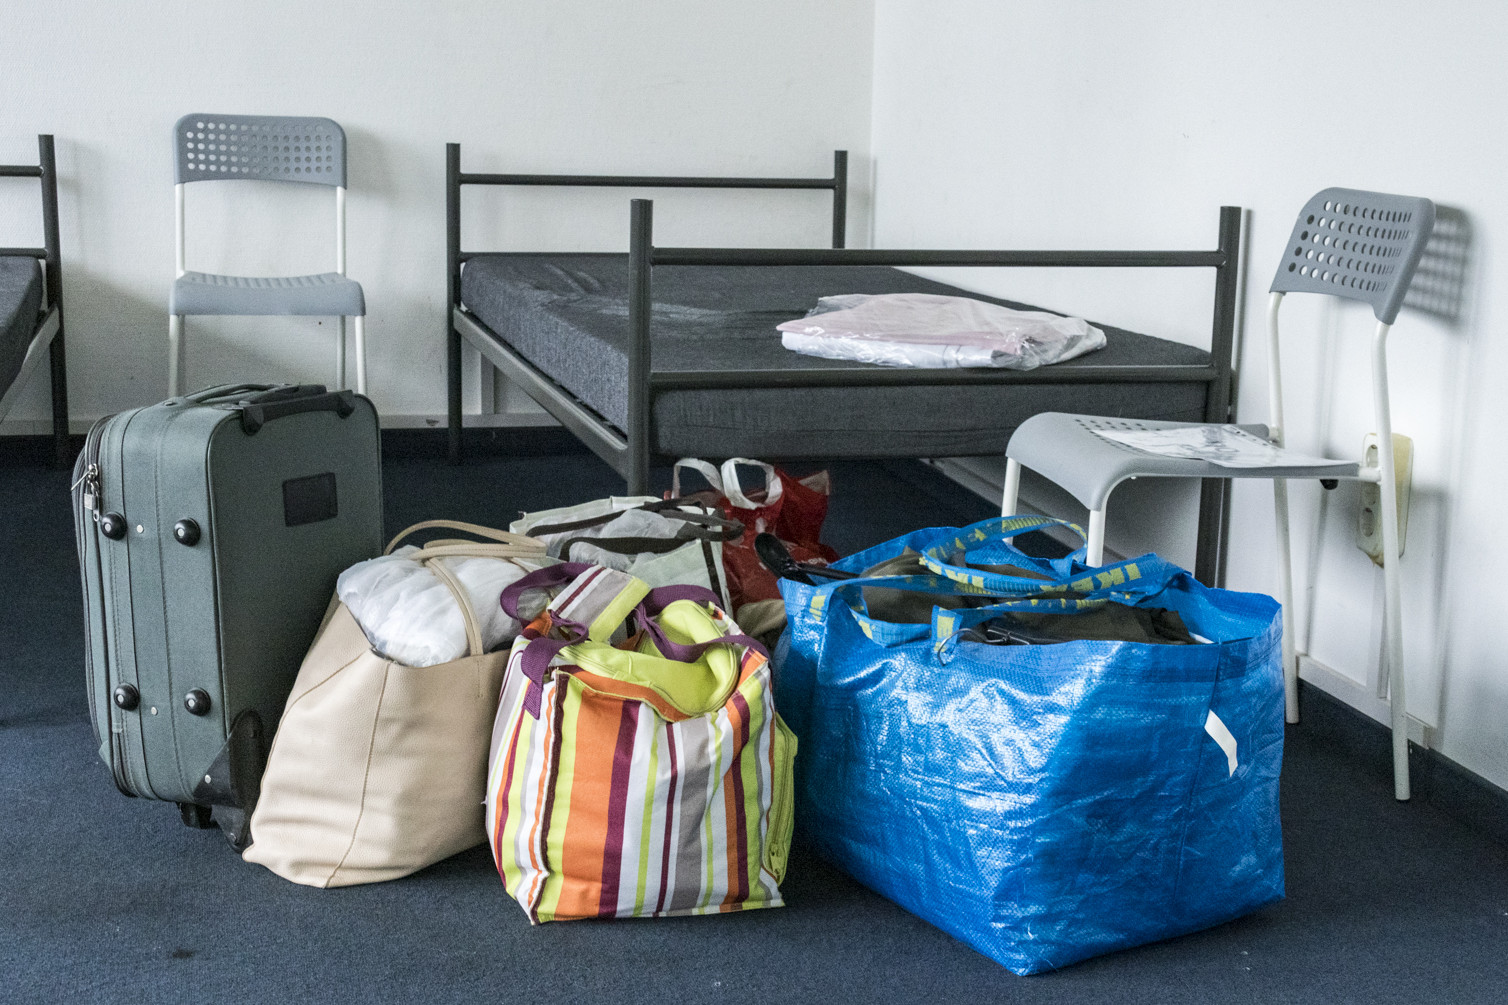 Gepäckstücke stehen vor einem Bett in einer Notunterkunft.